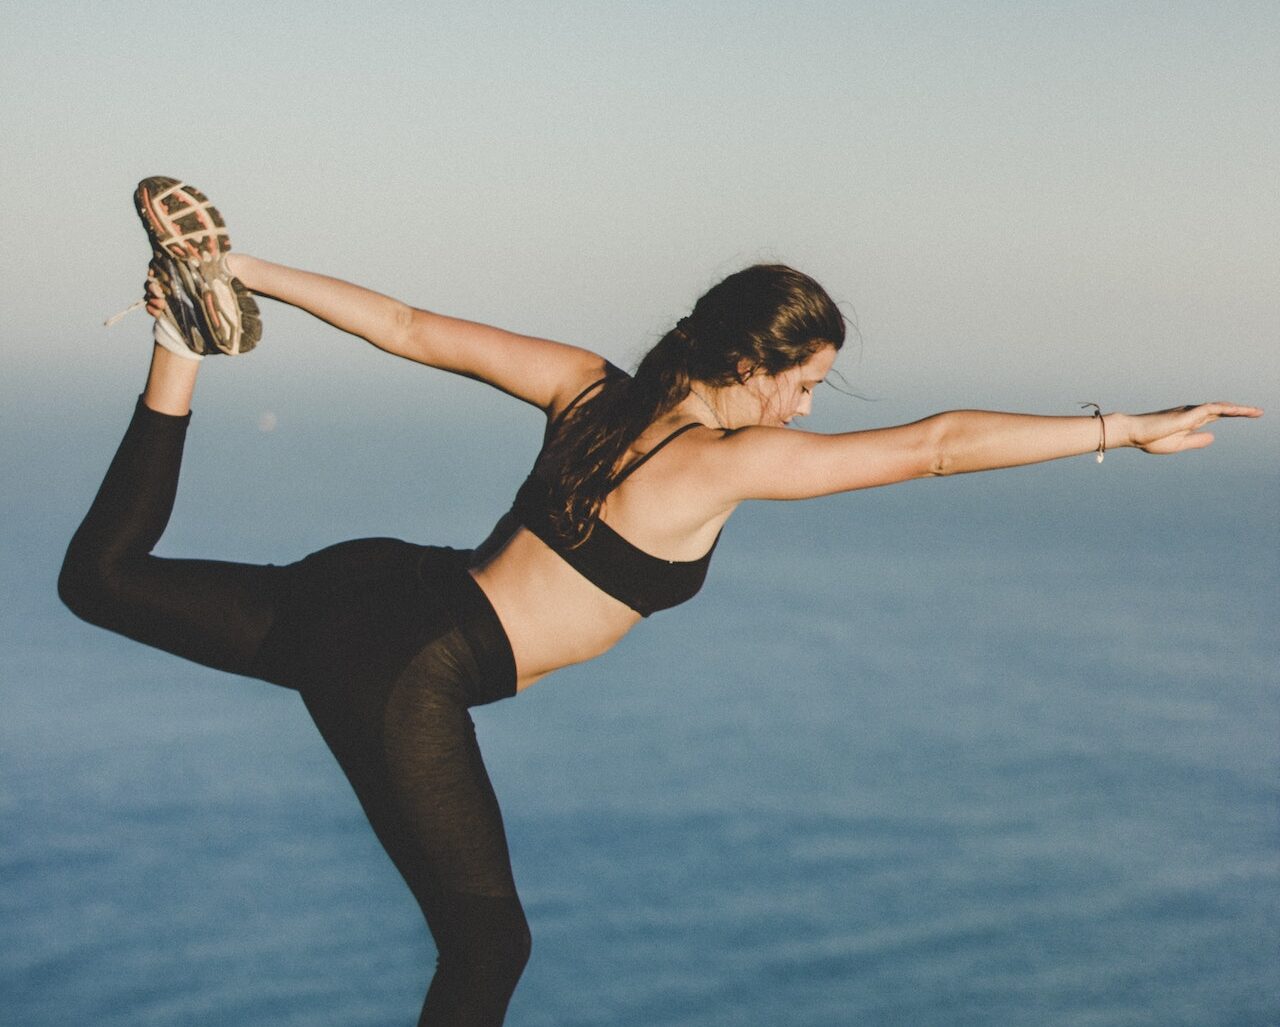 Κάνοντας yoga, μπορείς να αποκτήσεις τα πλούσια και υγιή μαλλιά που ονειρεύεσαι